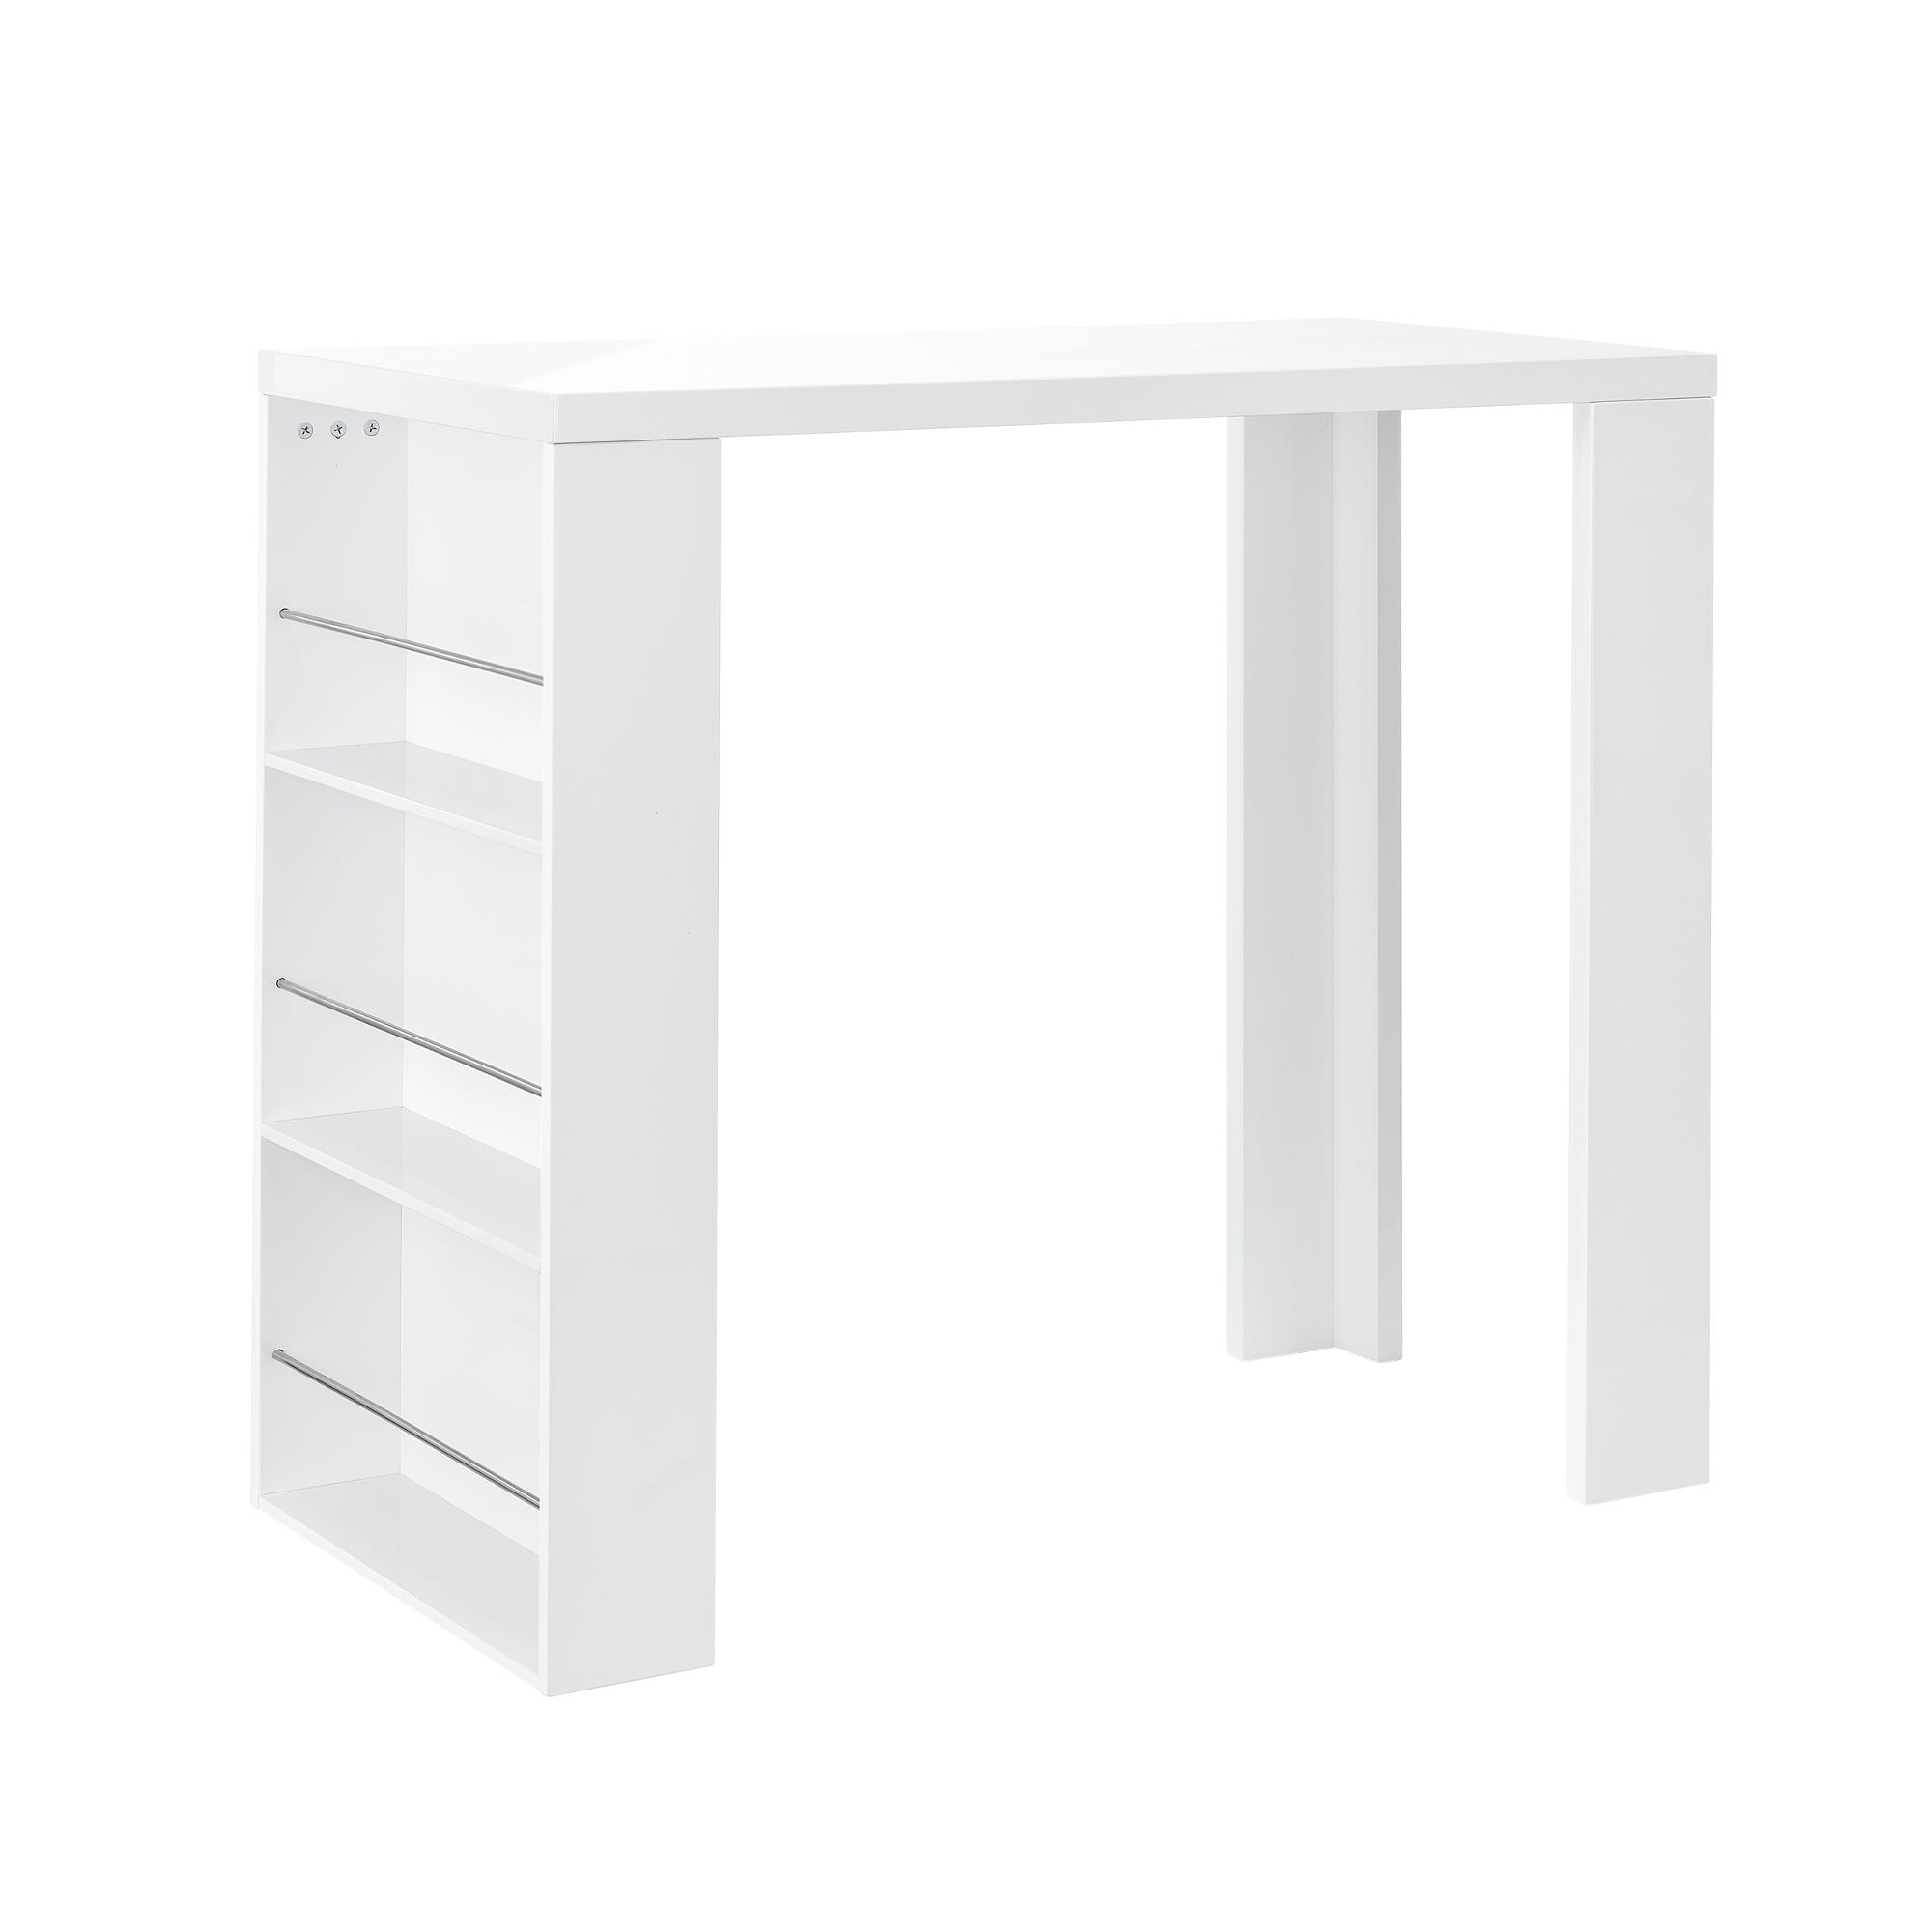 Bancone open bar 148x110 h cm con piano in plexiglass bianco e kit luce